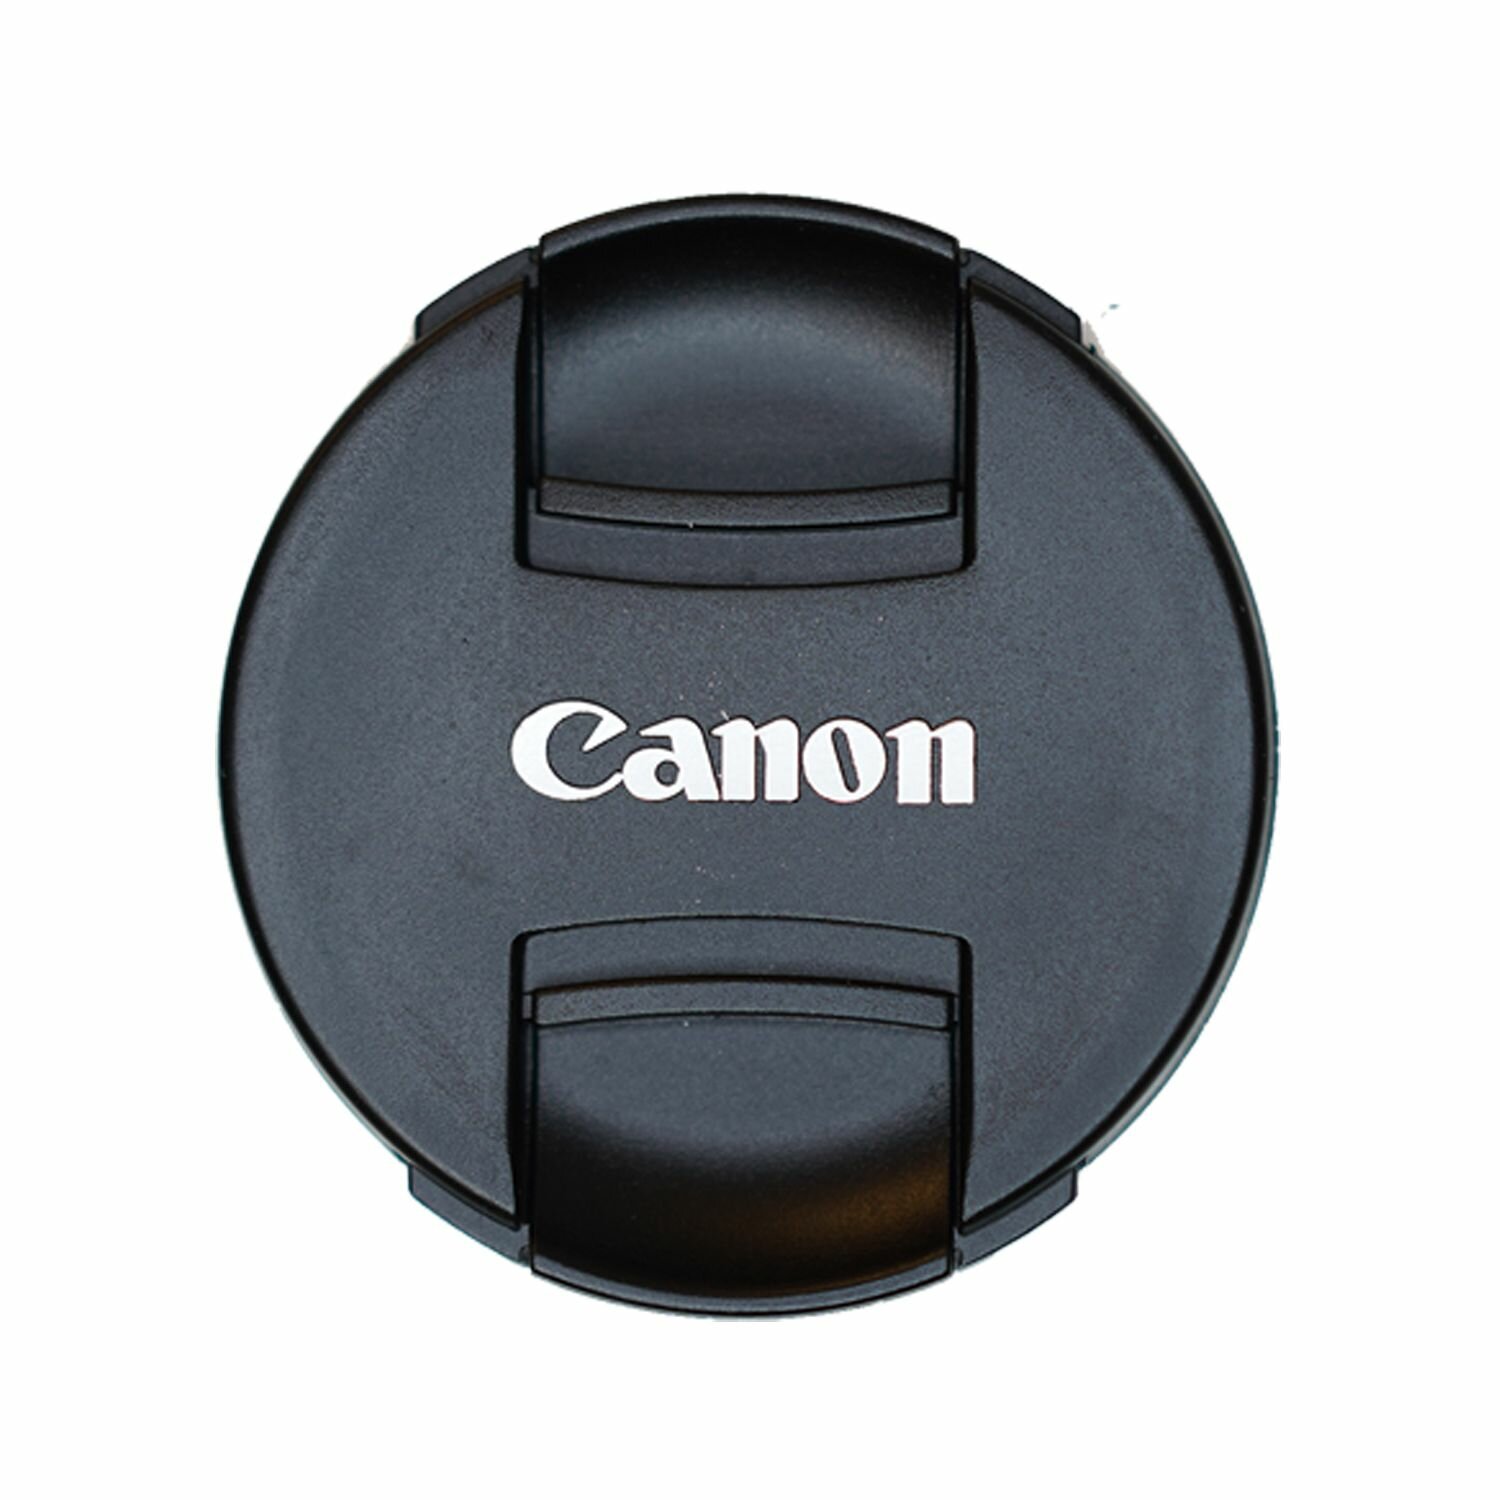 Защитная крышка для объектива с надписью "Canon"